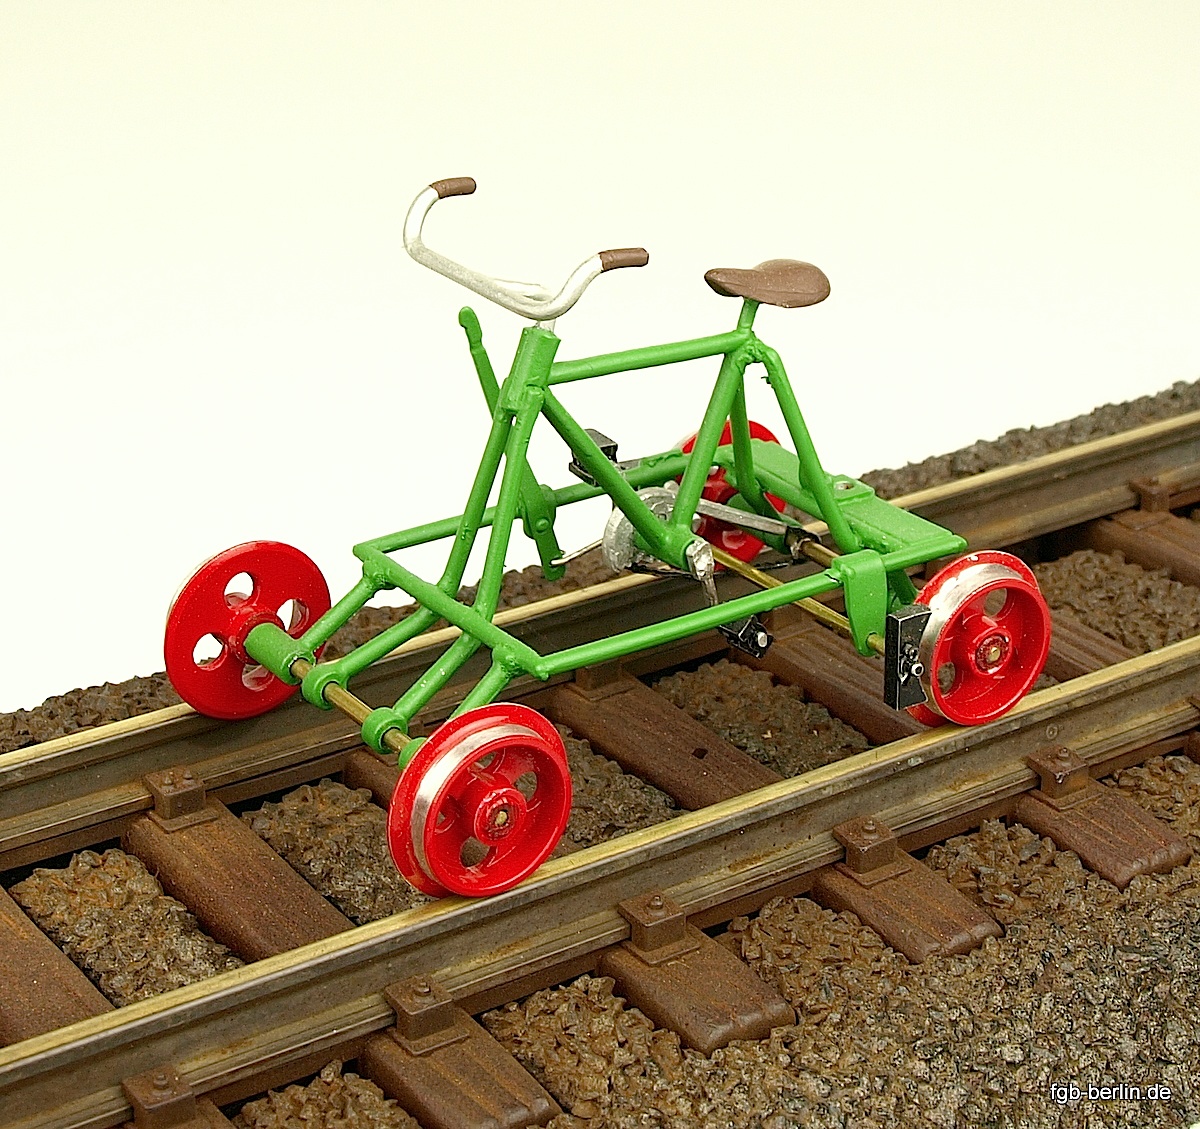 Schienenfahrrad (Rail cycle)